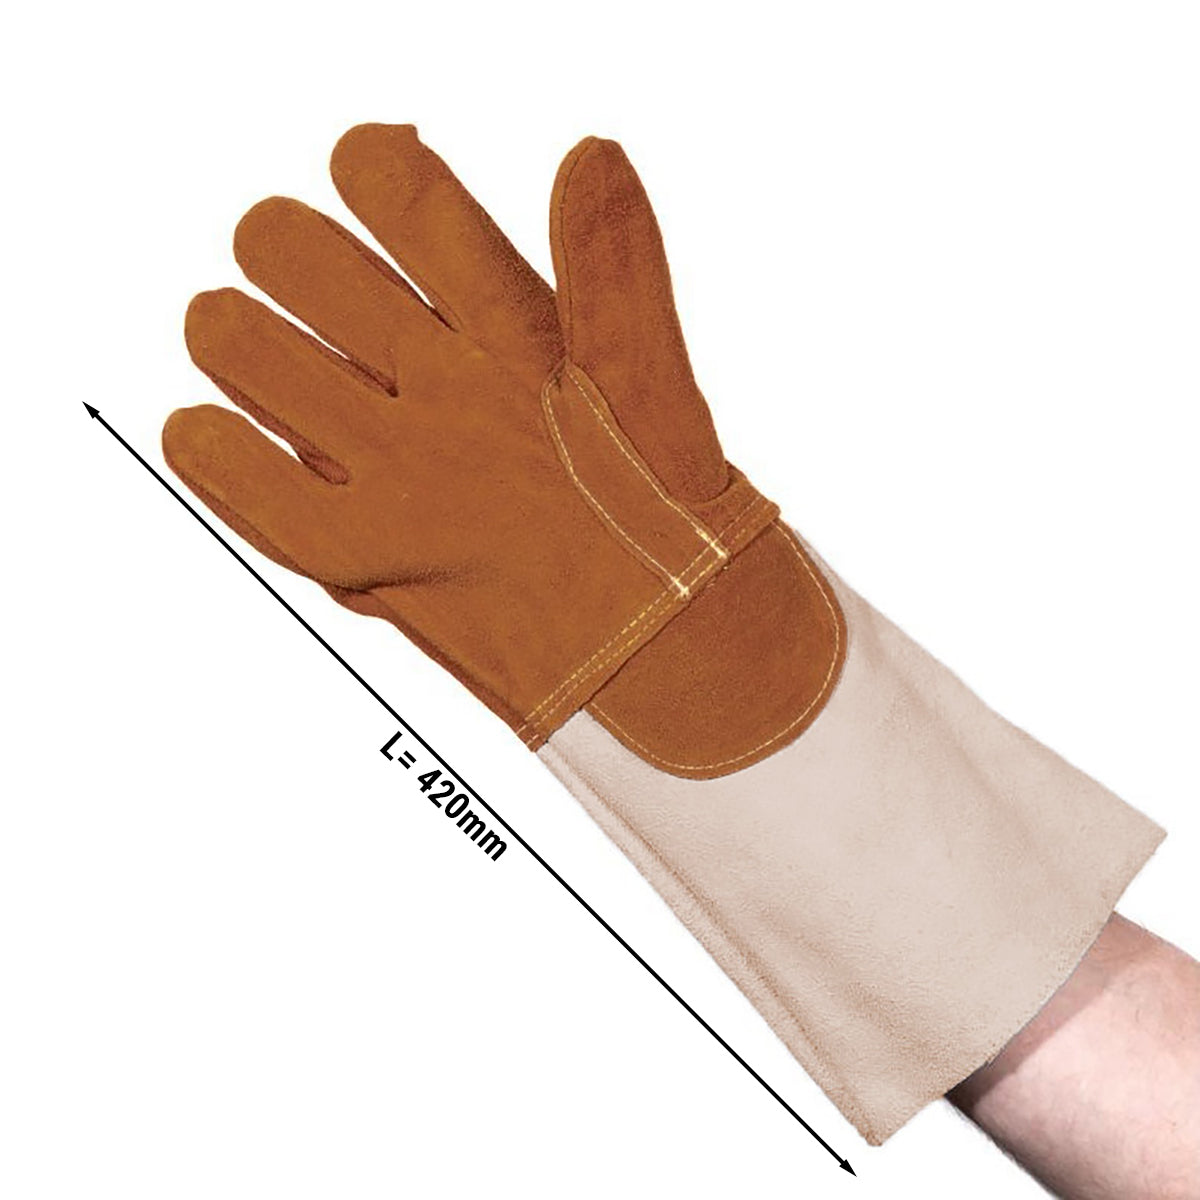 Ръкавица за пекарна от кожа - до 300 °C